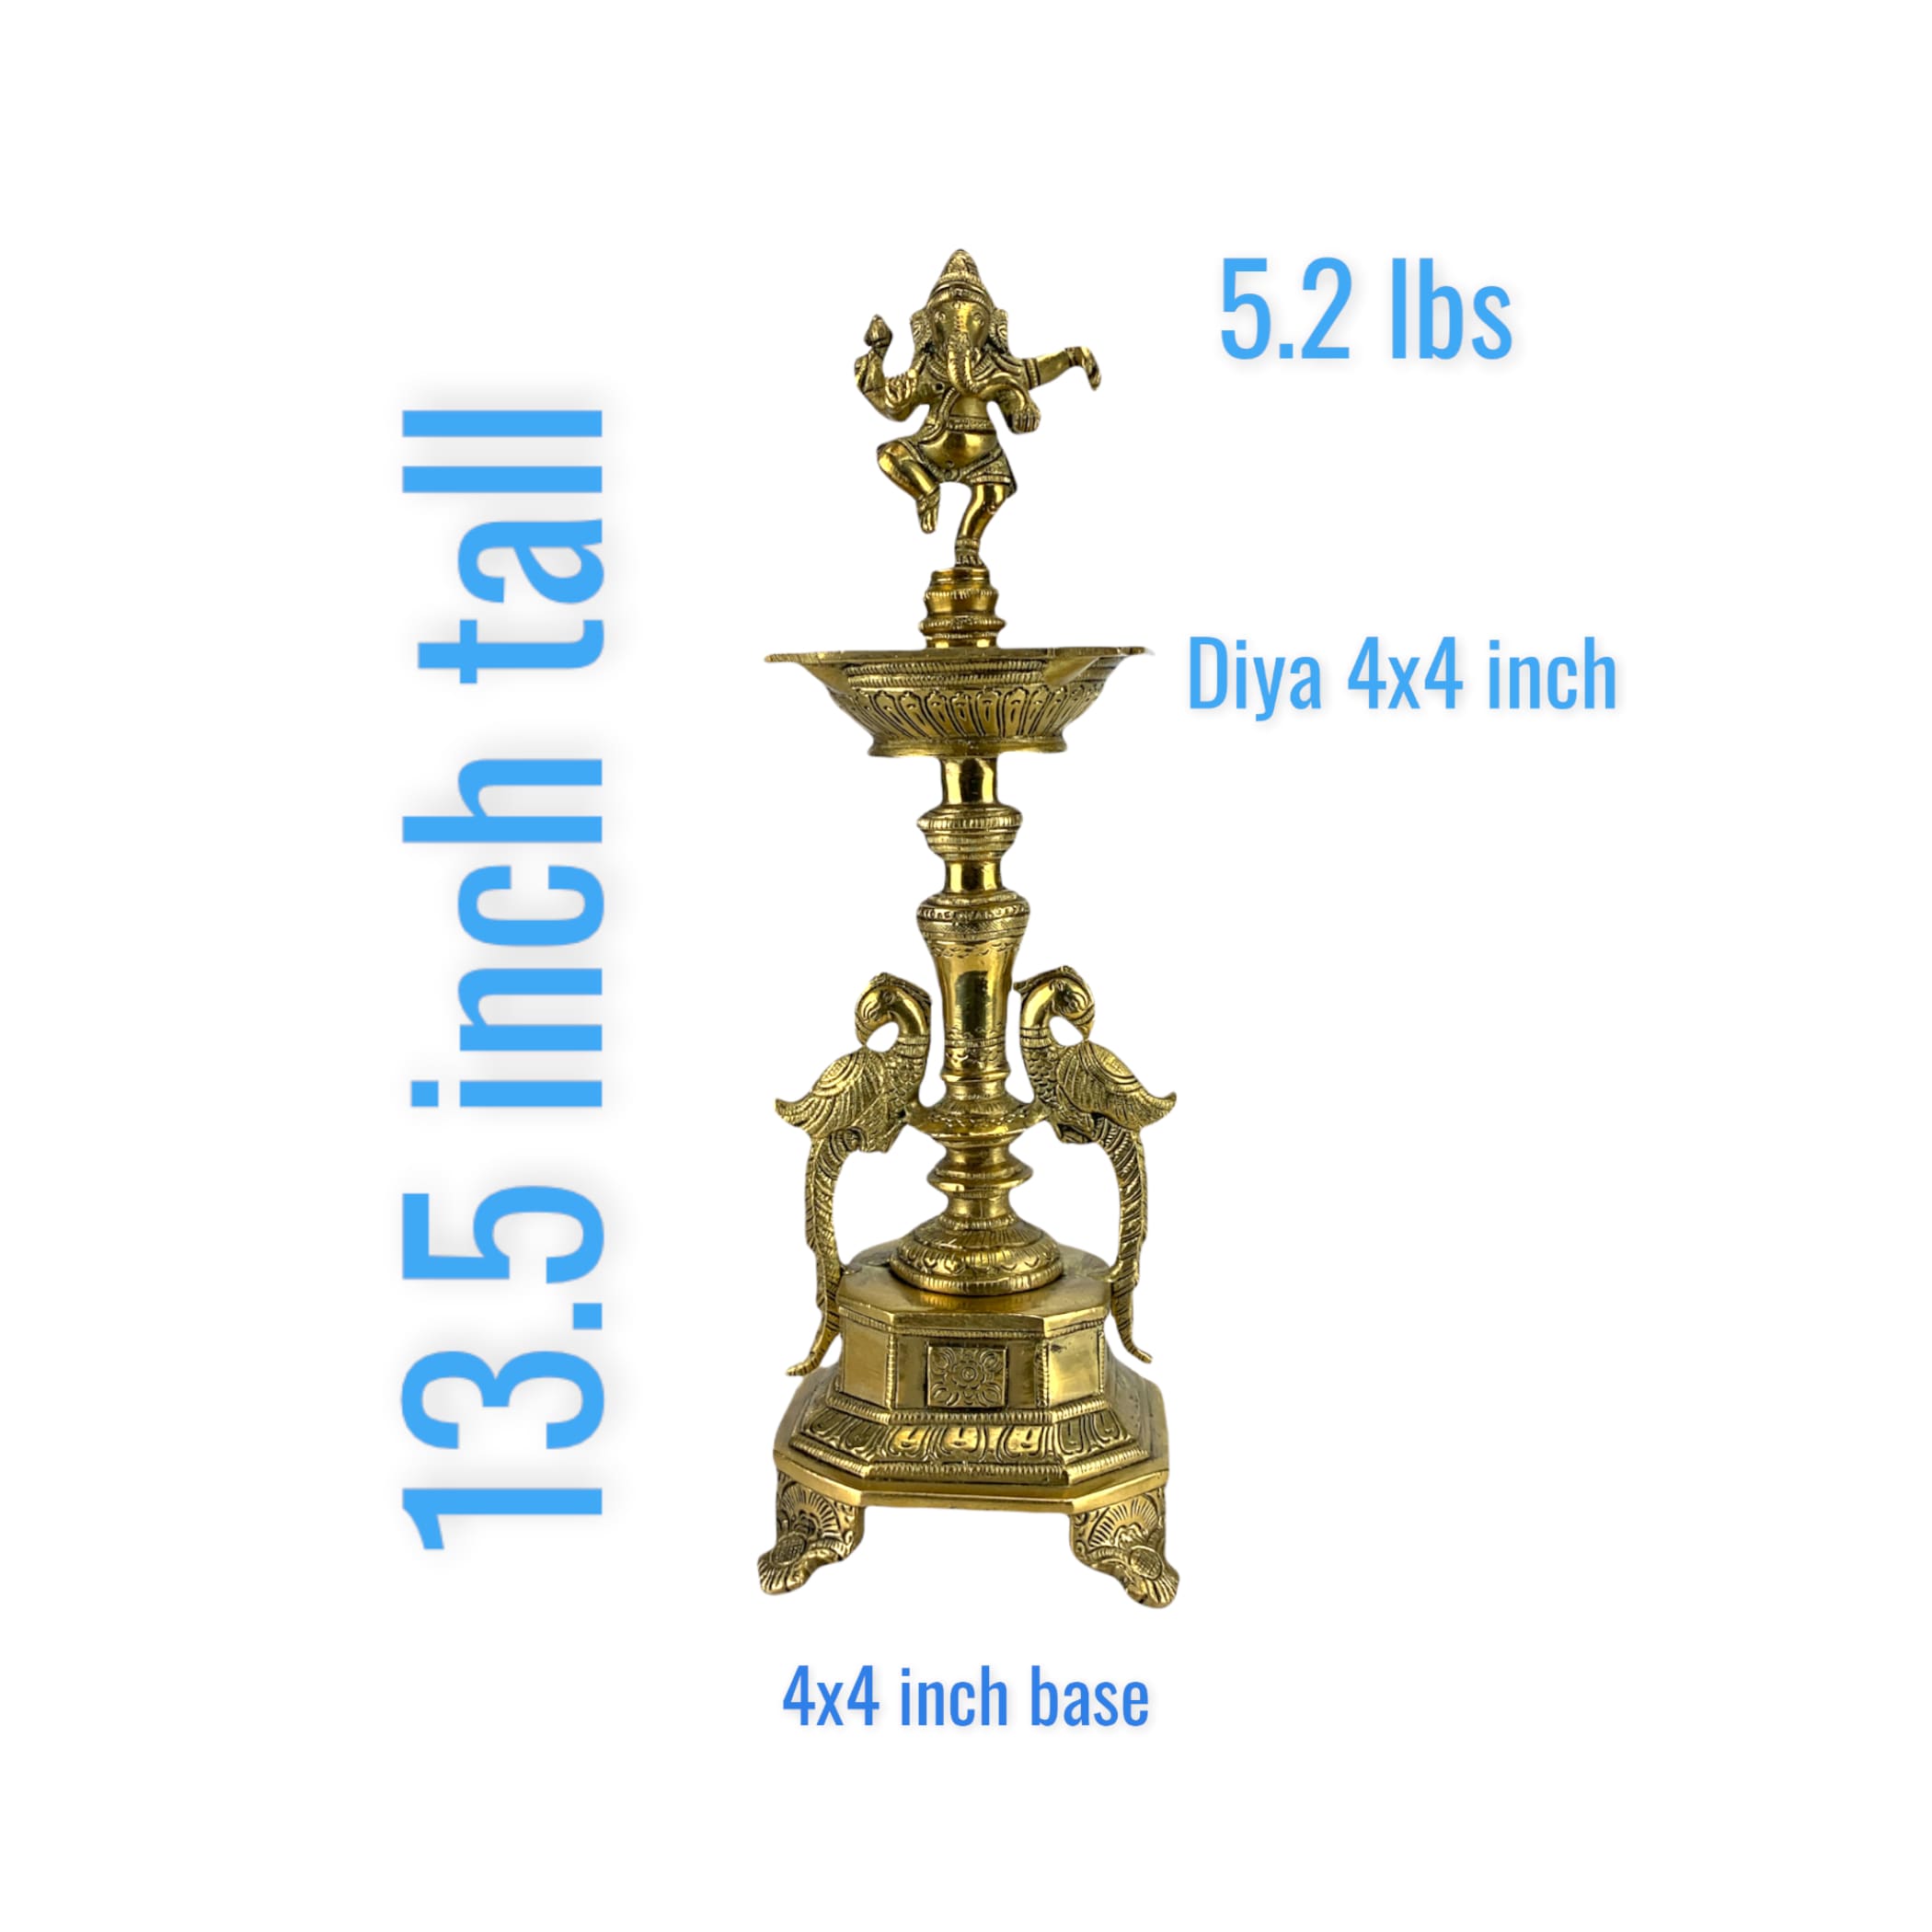 Ganesha Brass Oil Tall Diya Samai Diwali Decor Lamp Altar